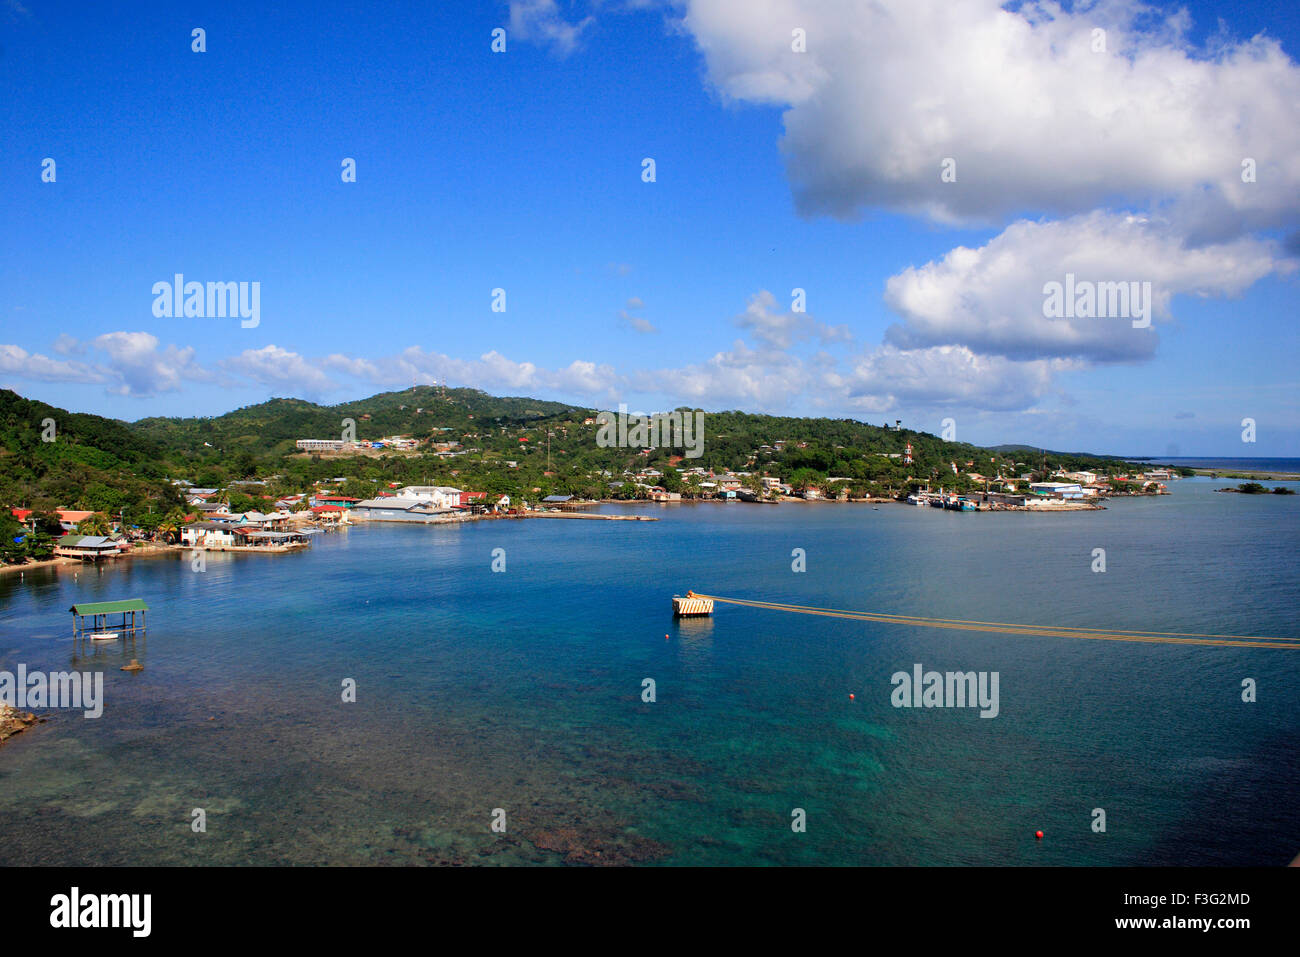 Le centre-ville de corail dans l'eau ; ; ; Pays Honduras Roatan island Banque D'Images